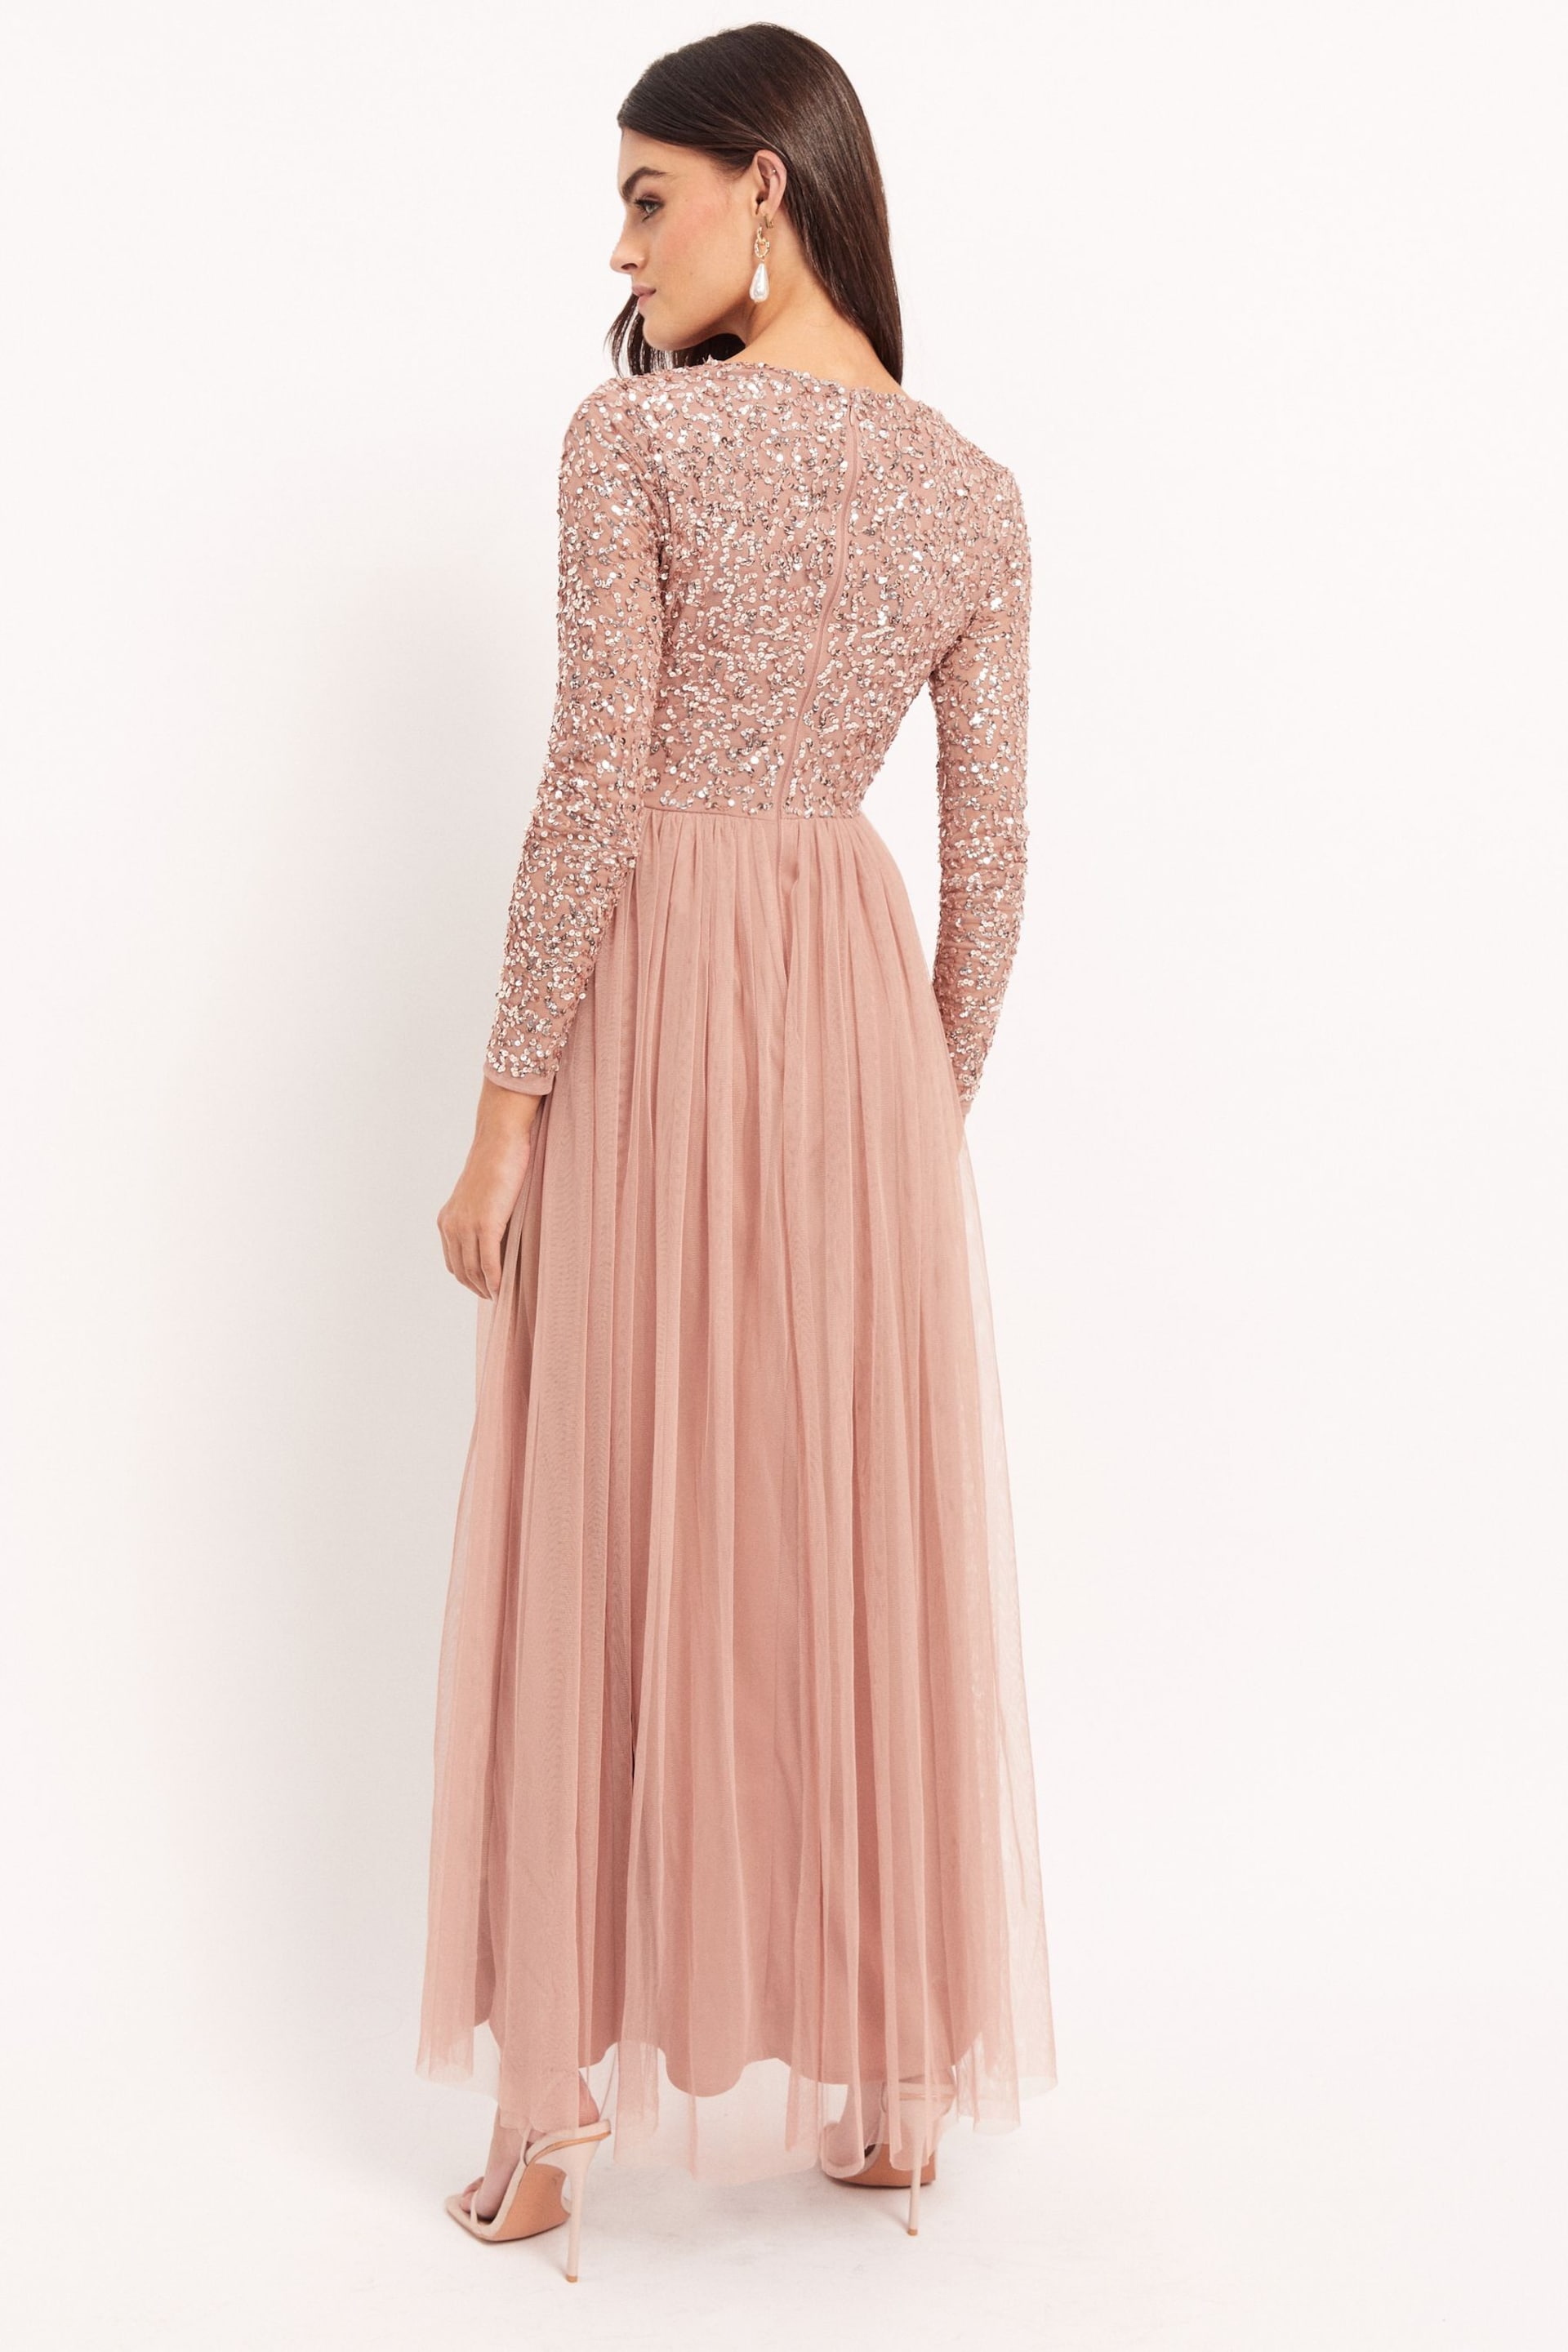 Maya Pink Embellished Long Sleeve Maxi Dress - Image 2 of 4